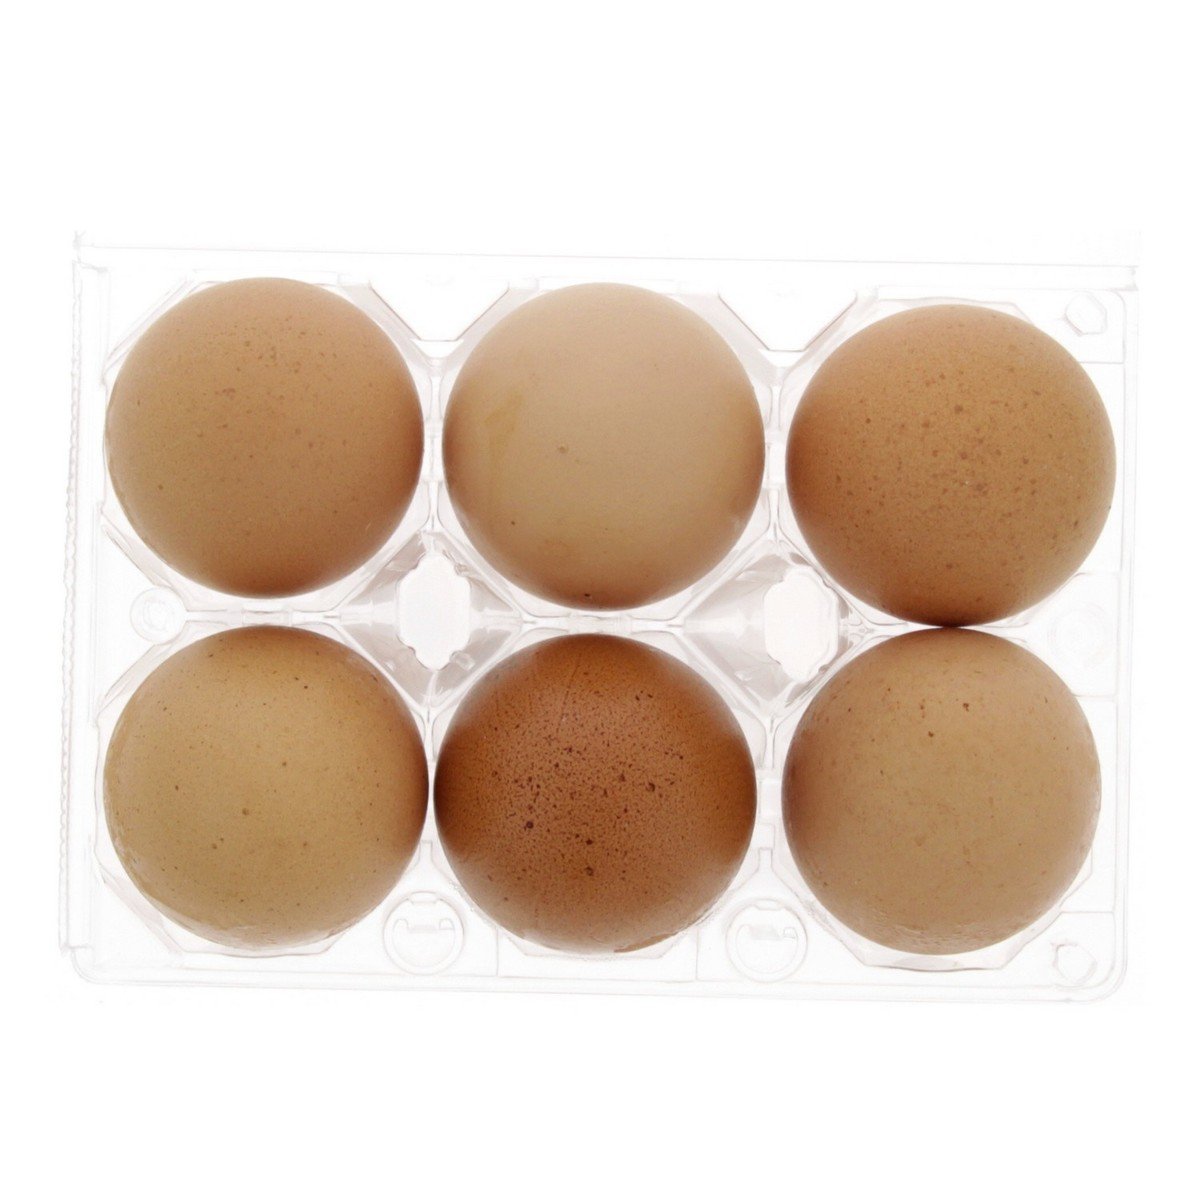 جنان اوميجا 3 بيض بني كبير 6 قطع